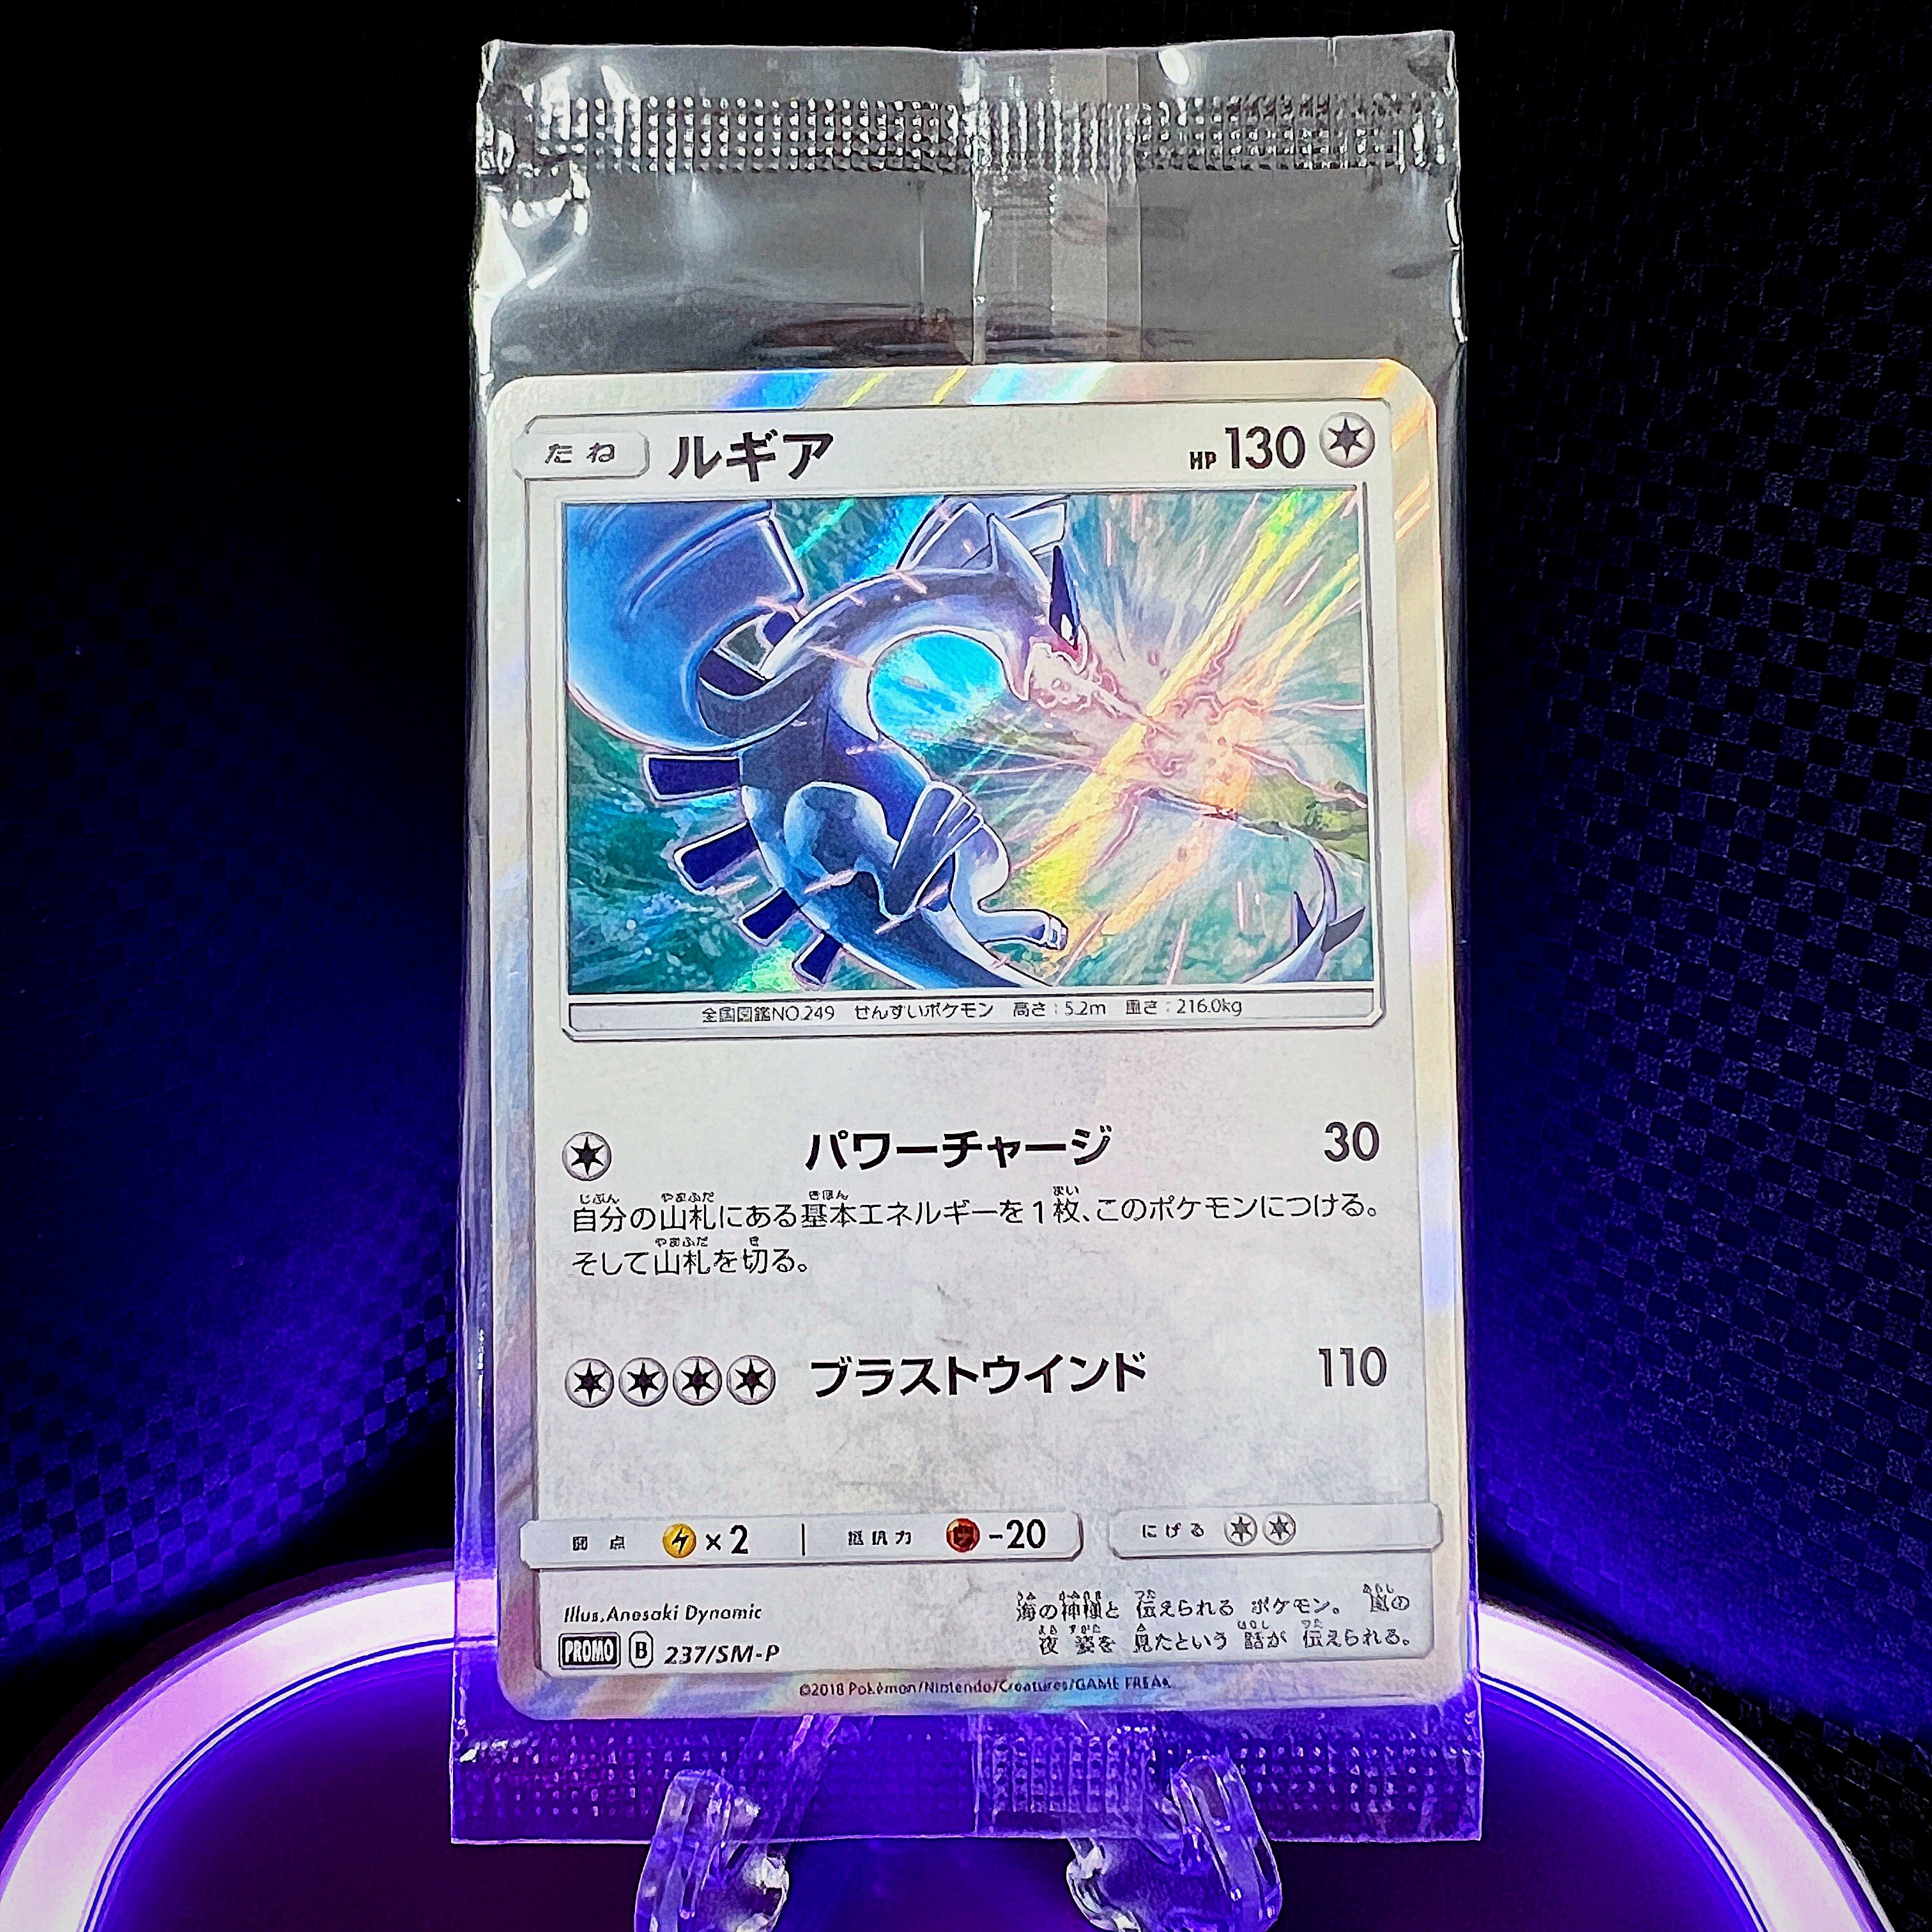 New Unopened Lugia 237/SM-P PROMO Japanese Pokemon Card 2 Card set MINT 